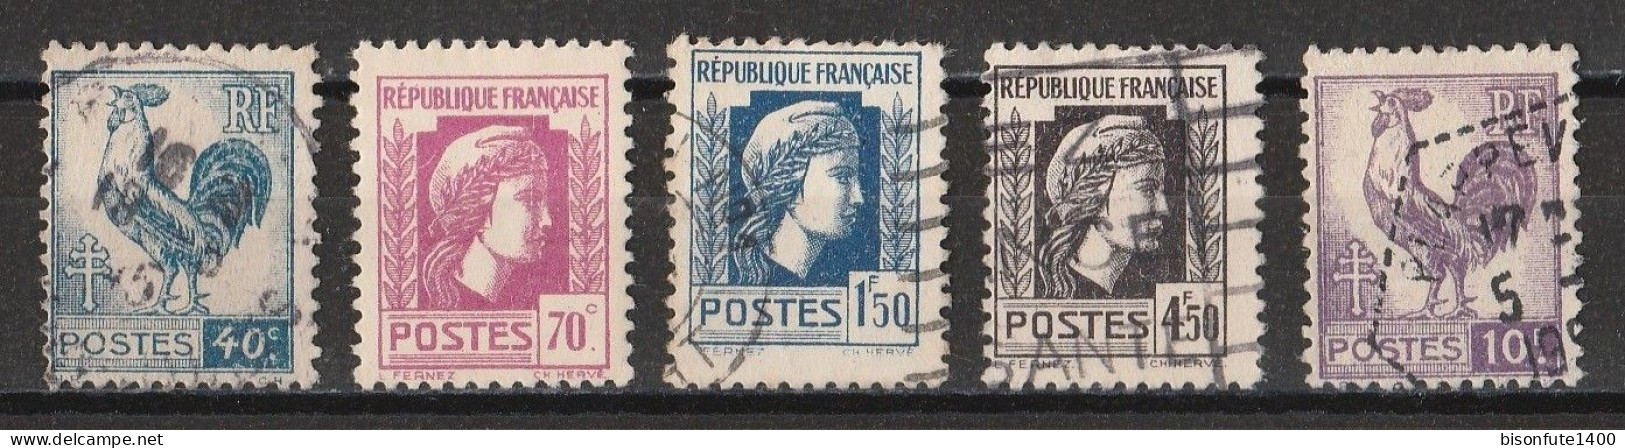 France 1944 : Timbres Yvert & Tellier N° 632 - 635 - 639 - 644 Et 646 Avec Oblitérations Rondes. - Oblitérés